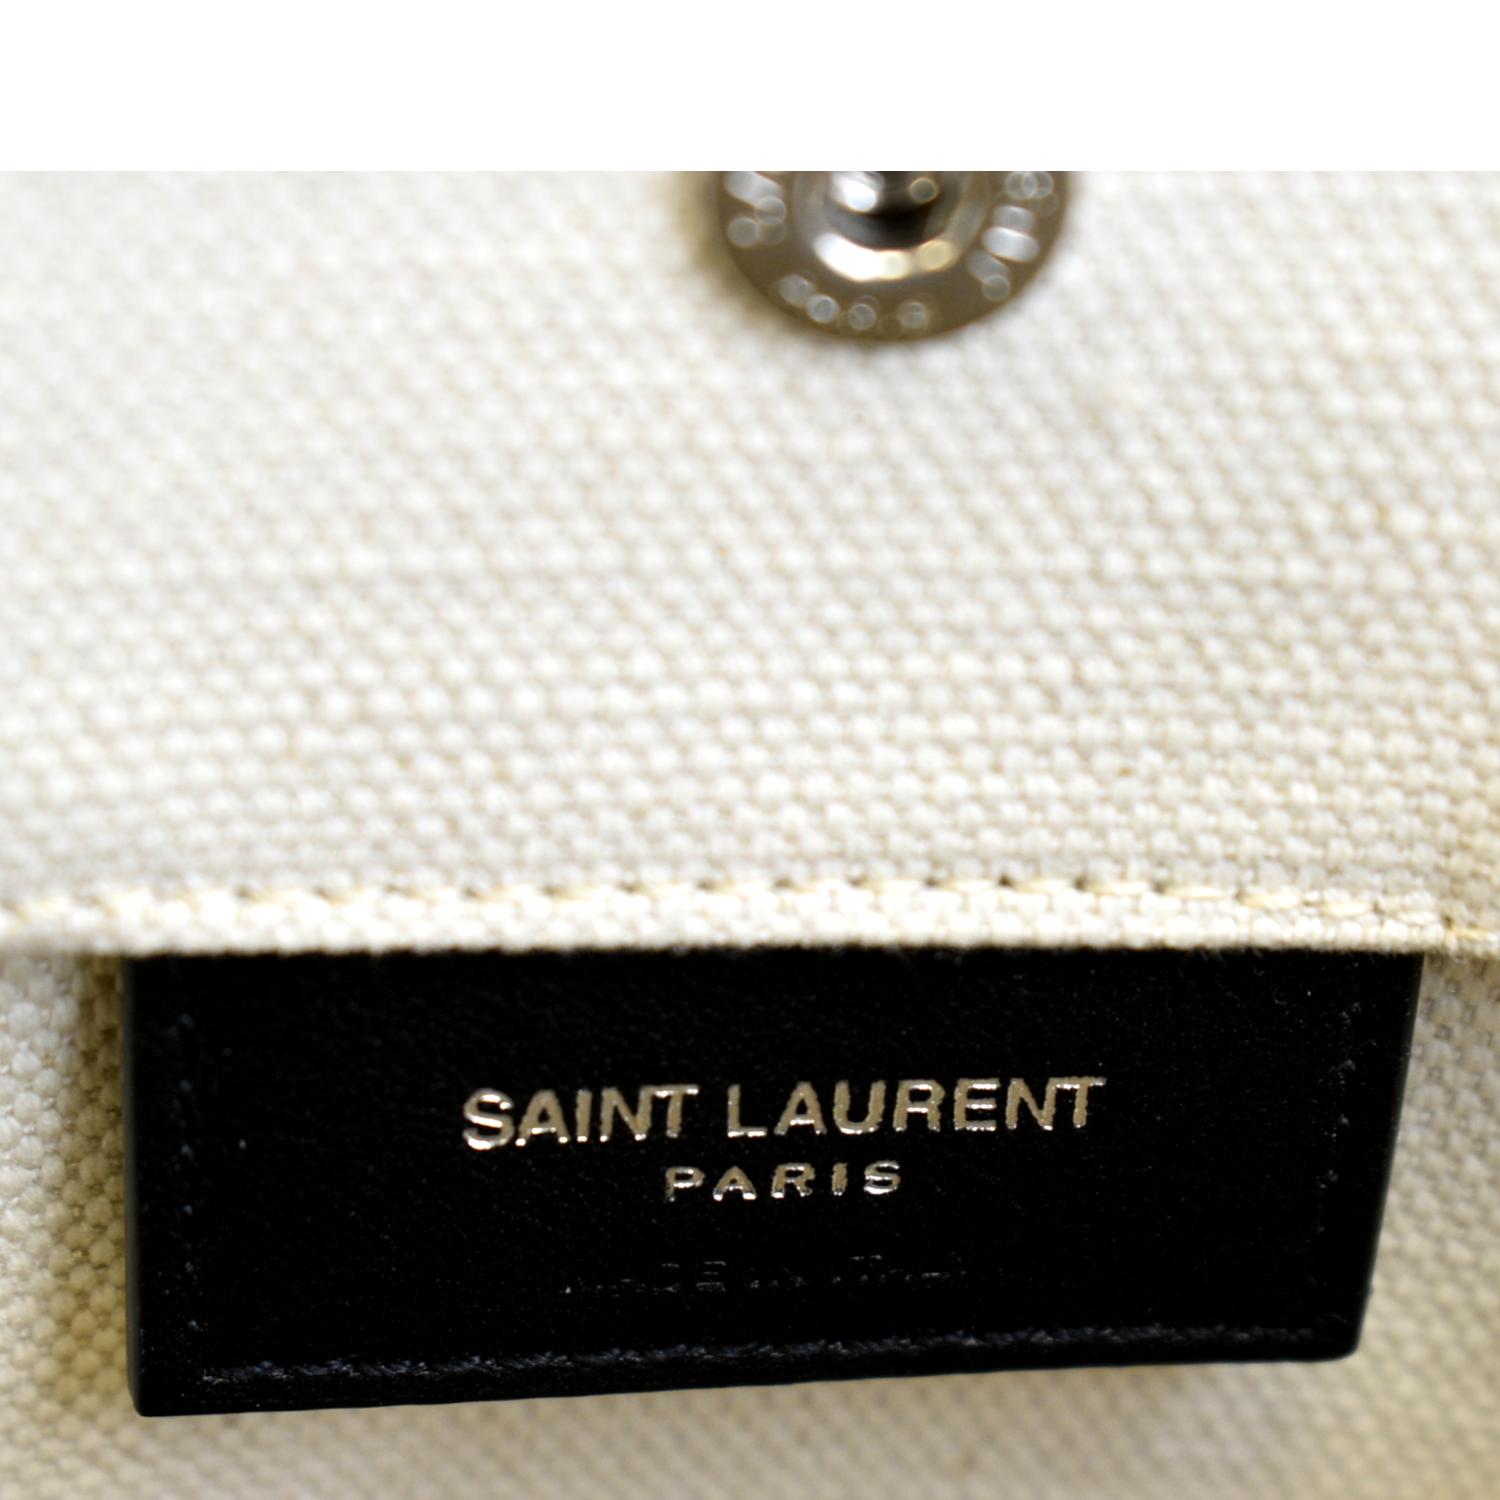 Shop Saint Laurent CABAS RIVE GAUCHE RIVE GAUCHE BUCKET BAG IN LINEN (____)  by candylovecath01